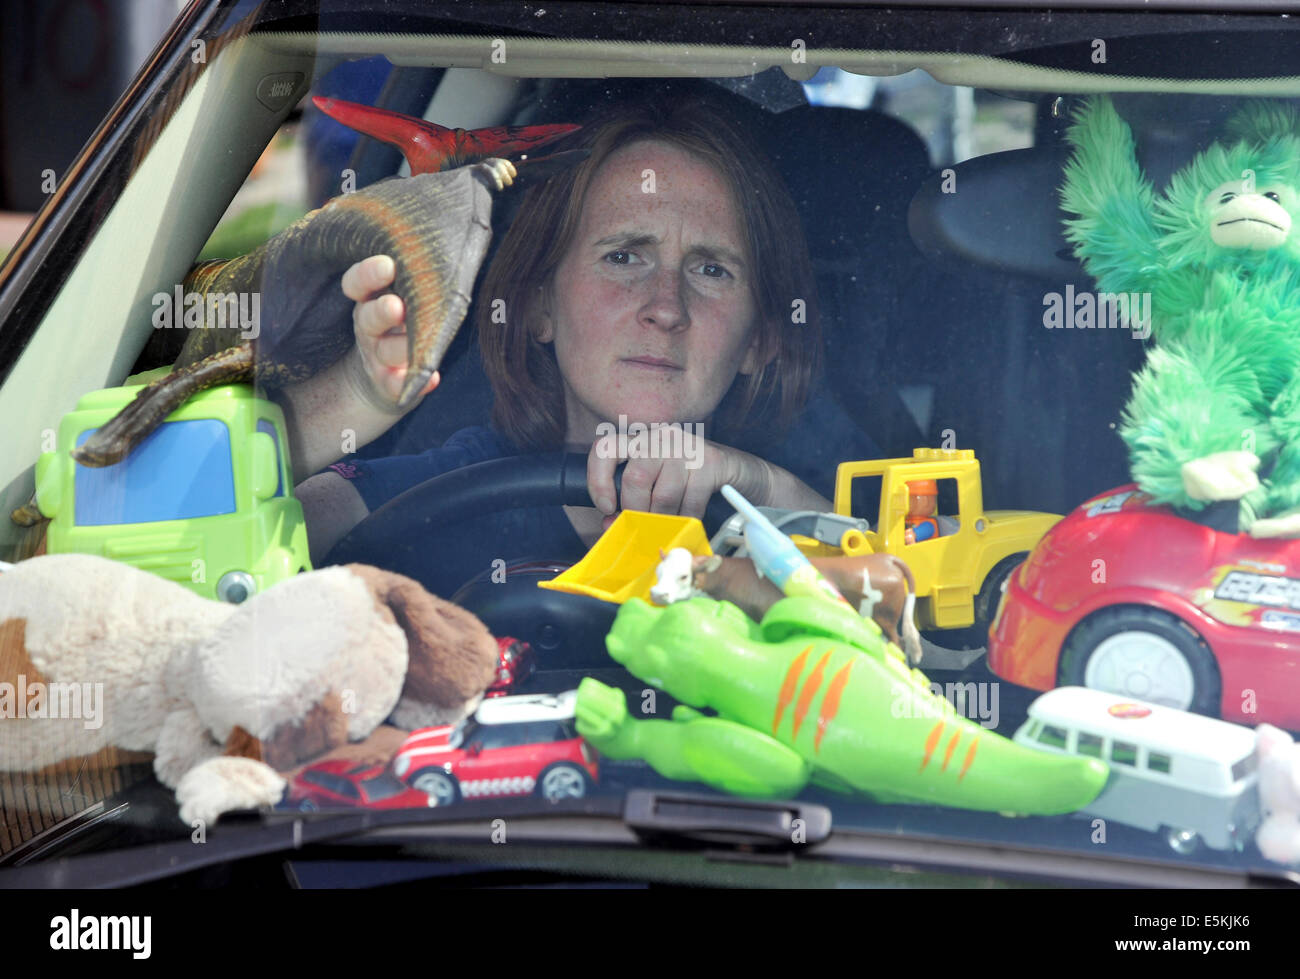 La mère a souligné submergés par des tas de jouets pour enfants dans sa voiture, par un écart de peeps voir le pare-brise Banque D'Images